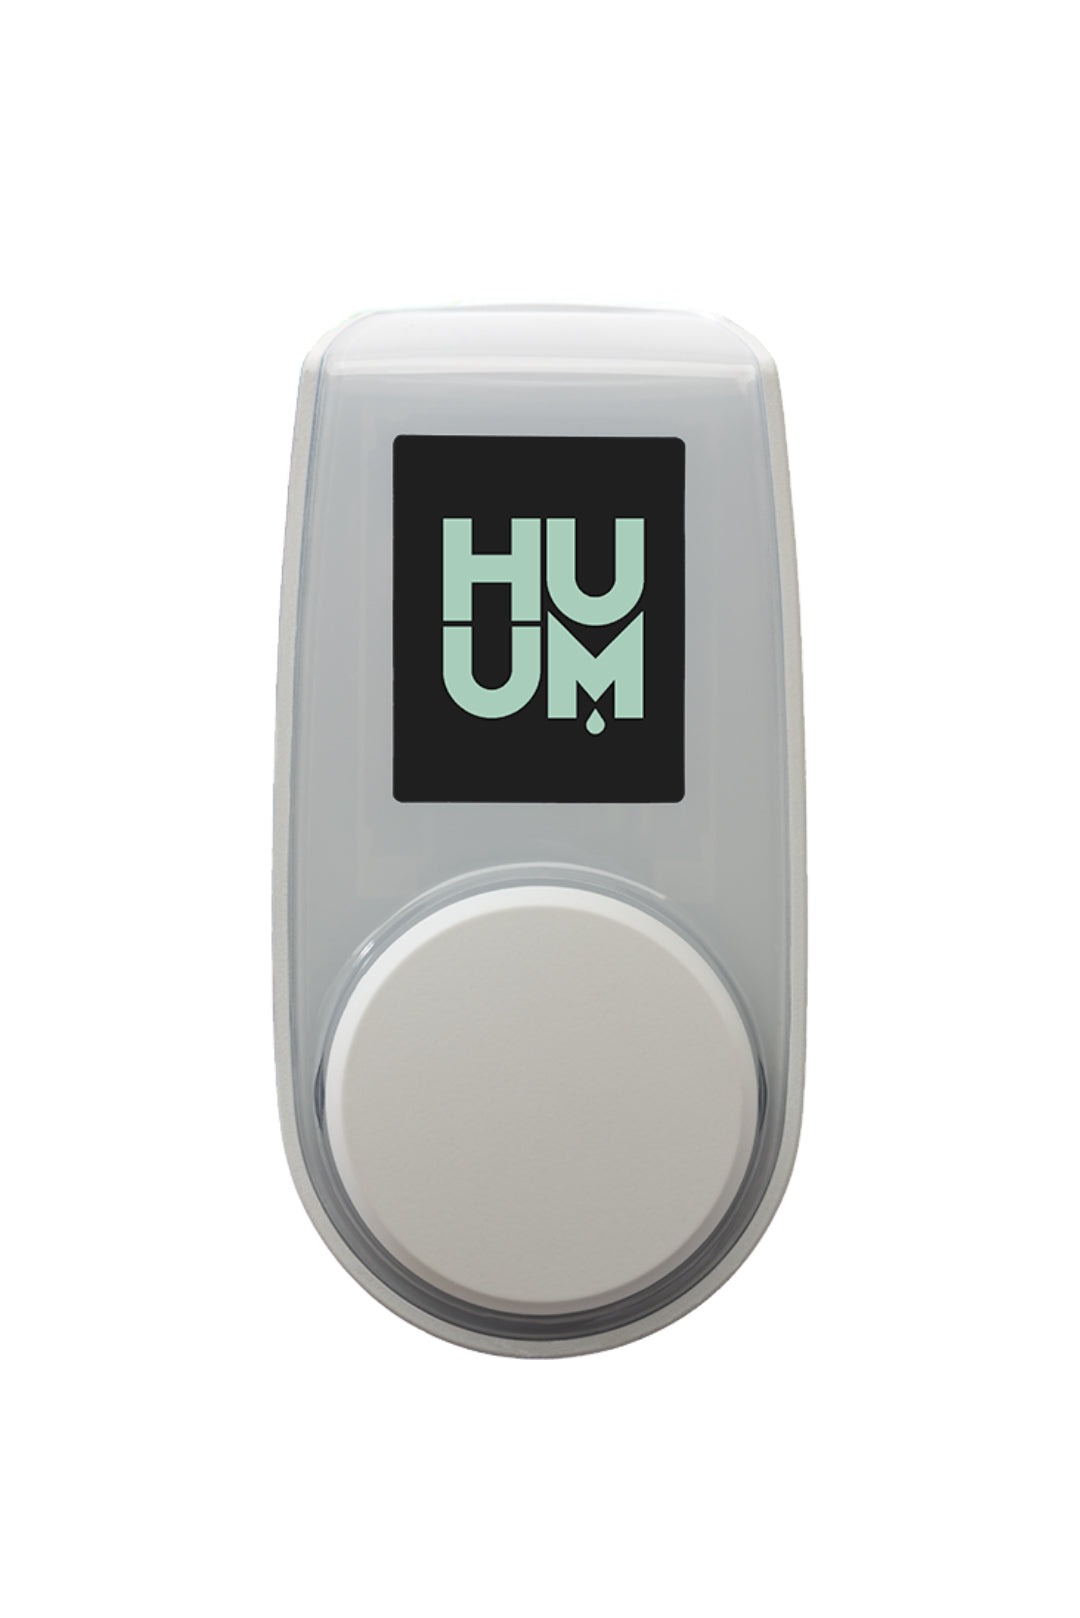 HUUM sauna control unit GSM in white color